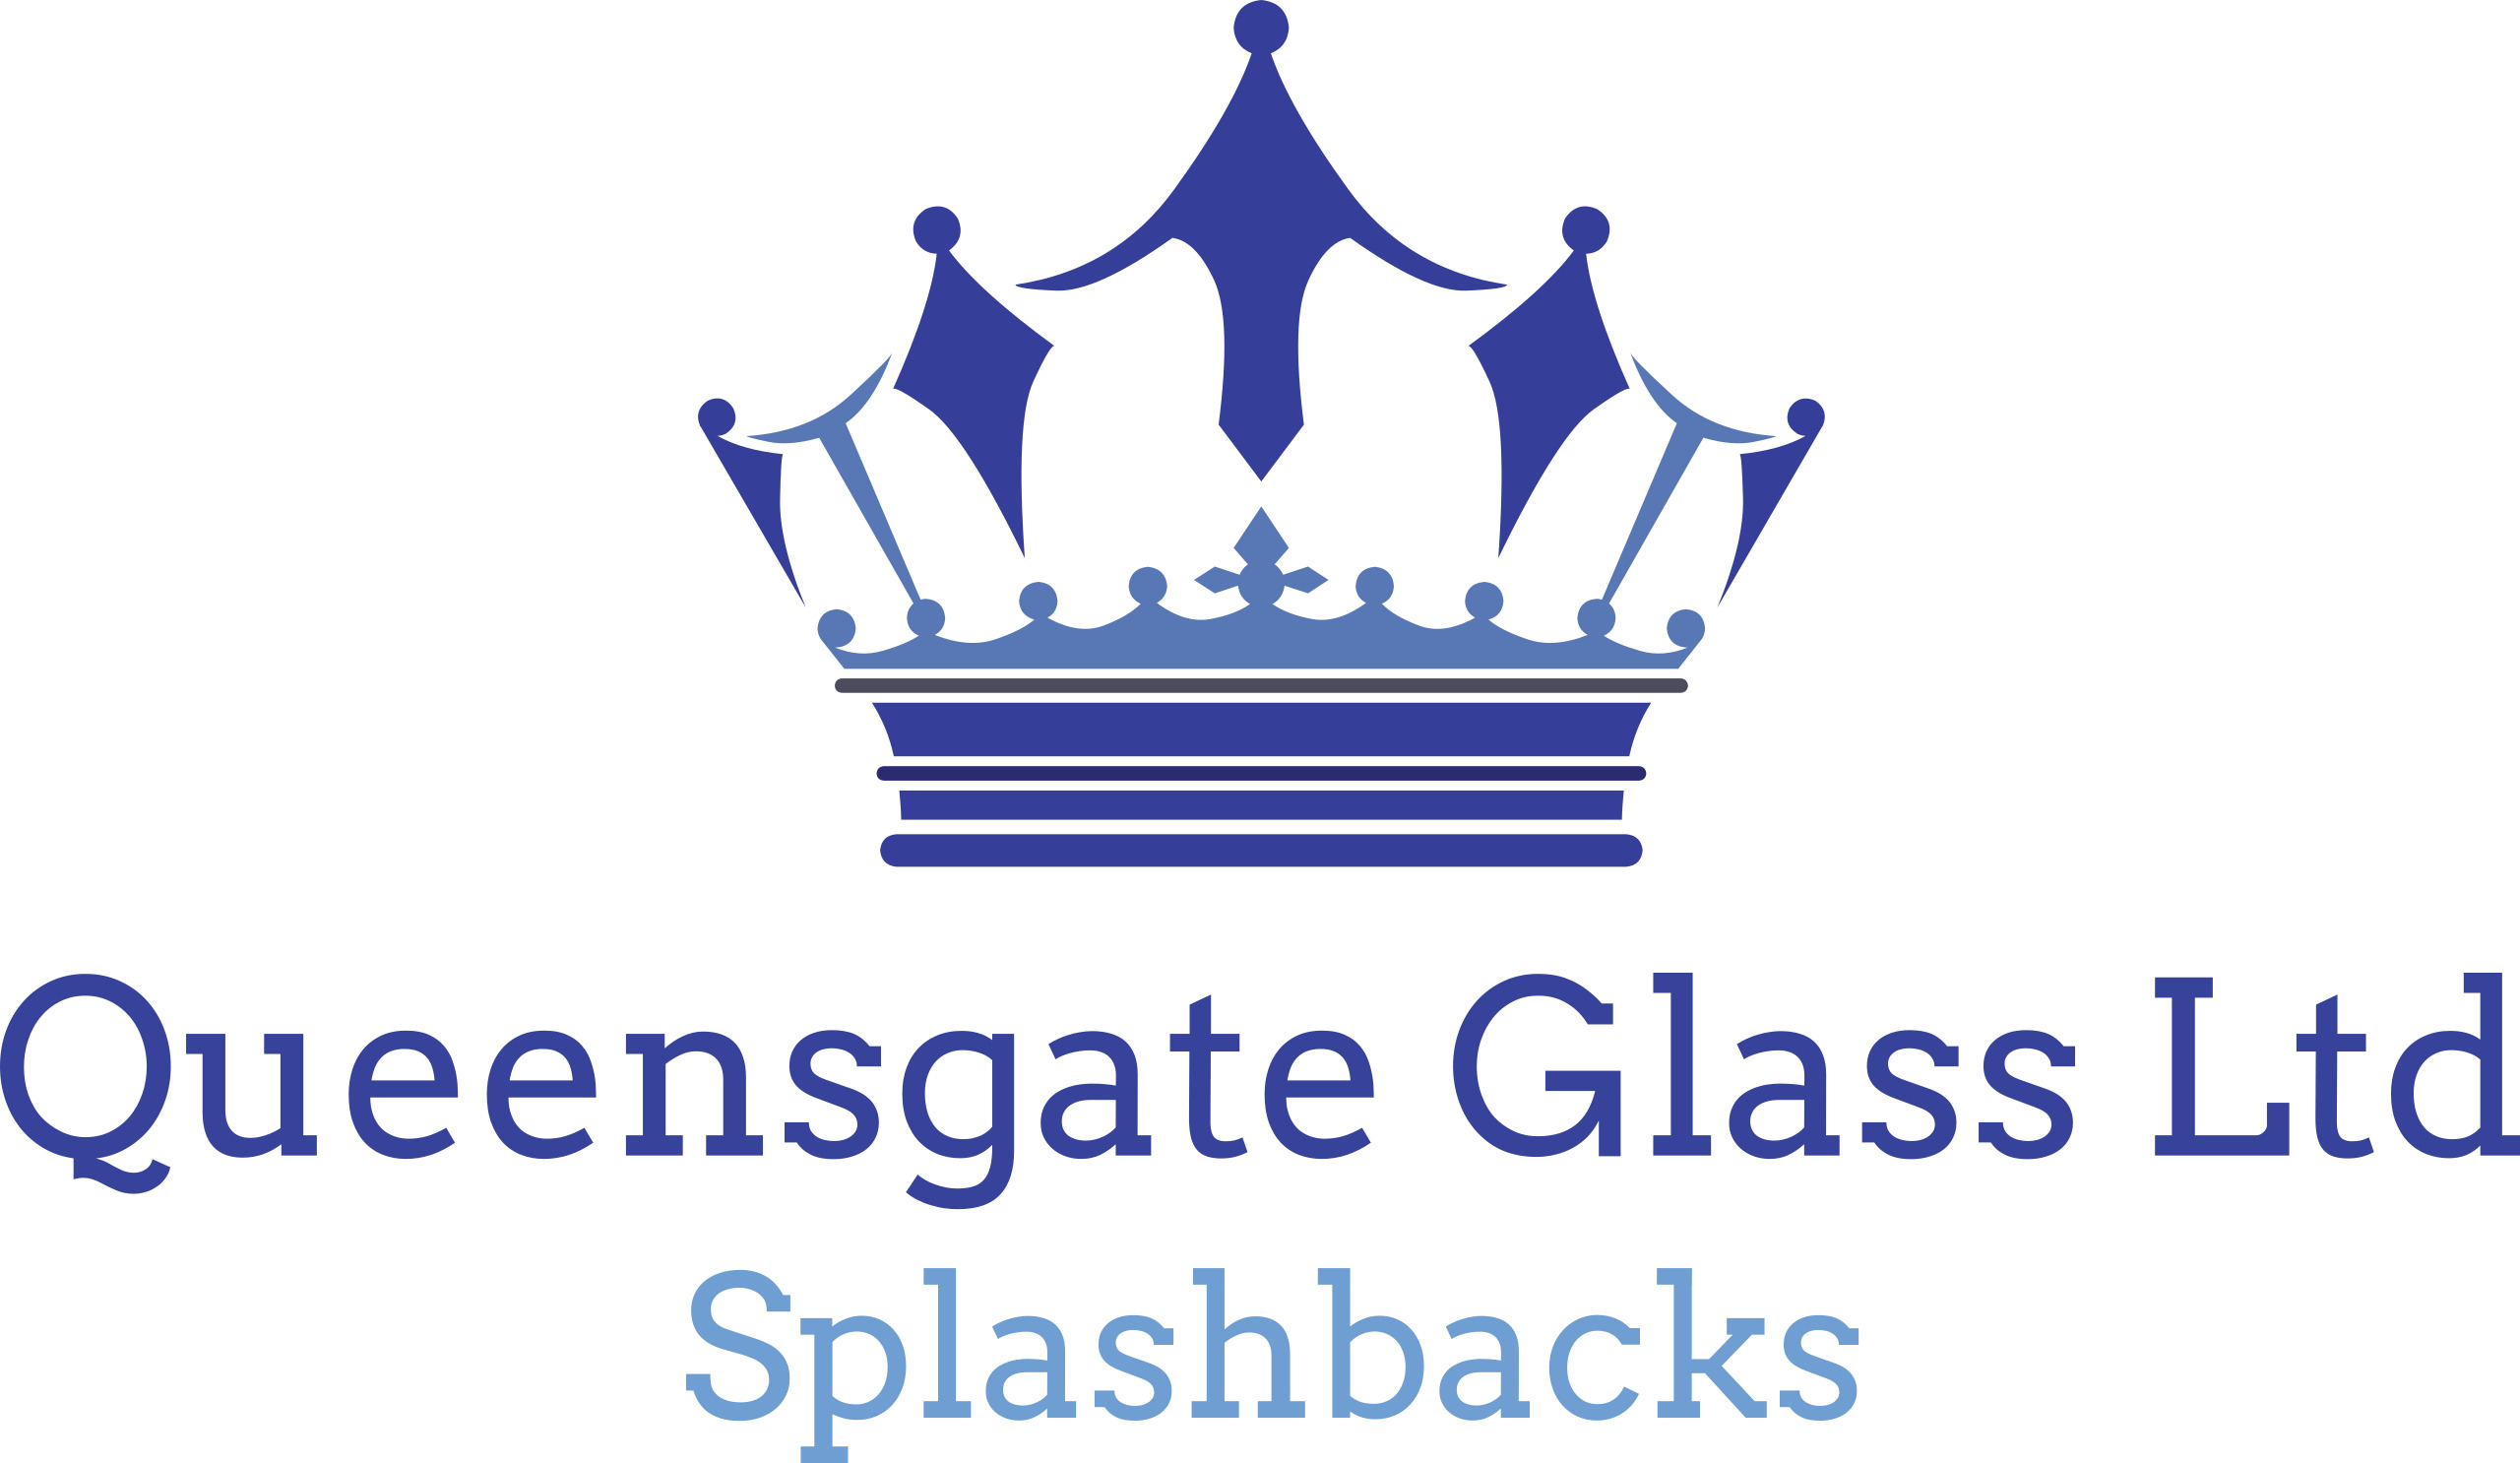 Queensgate Glass Ltd